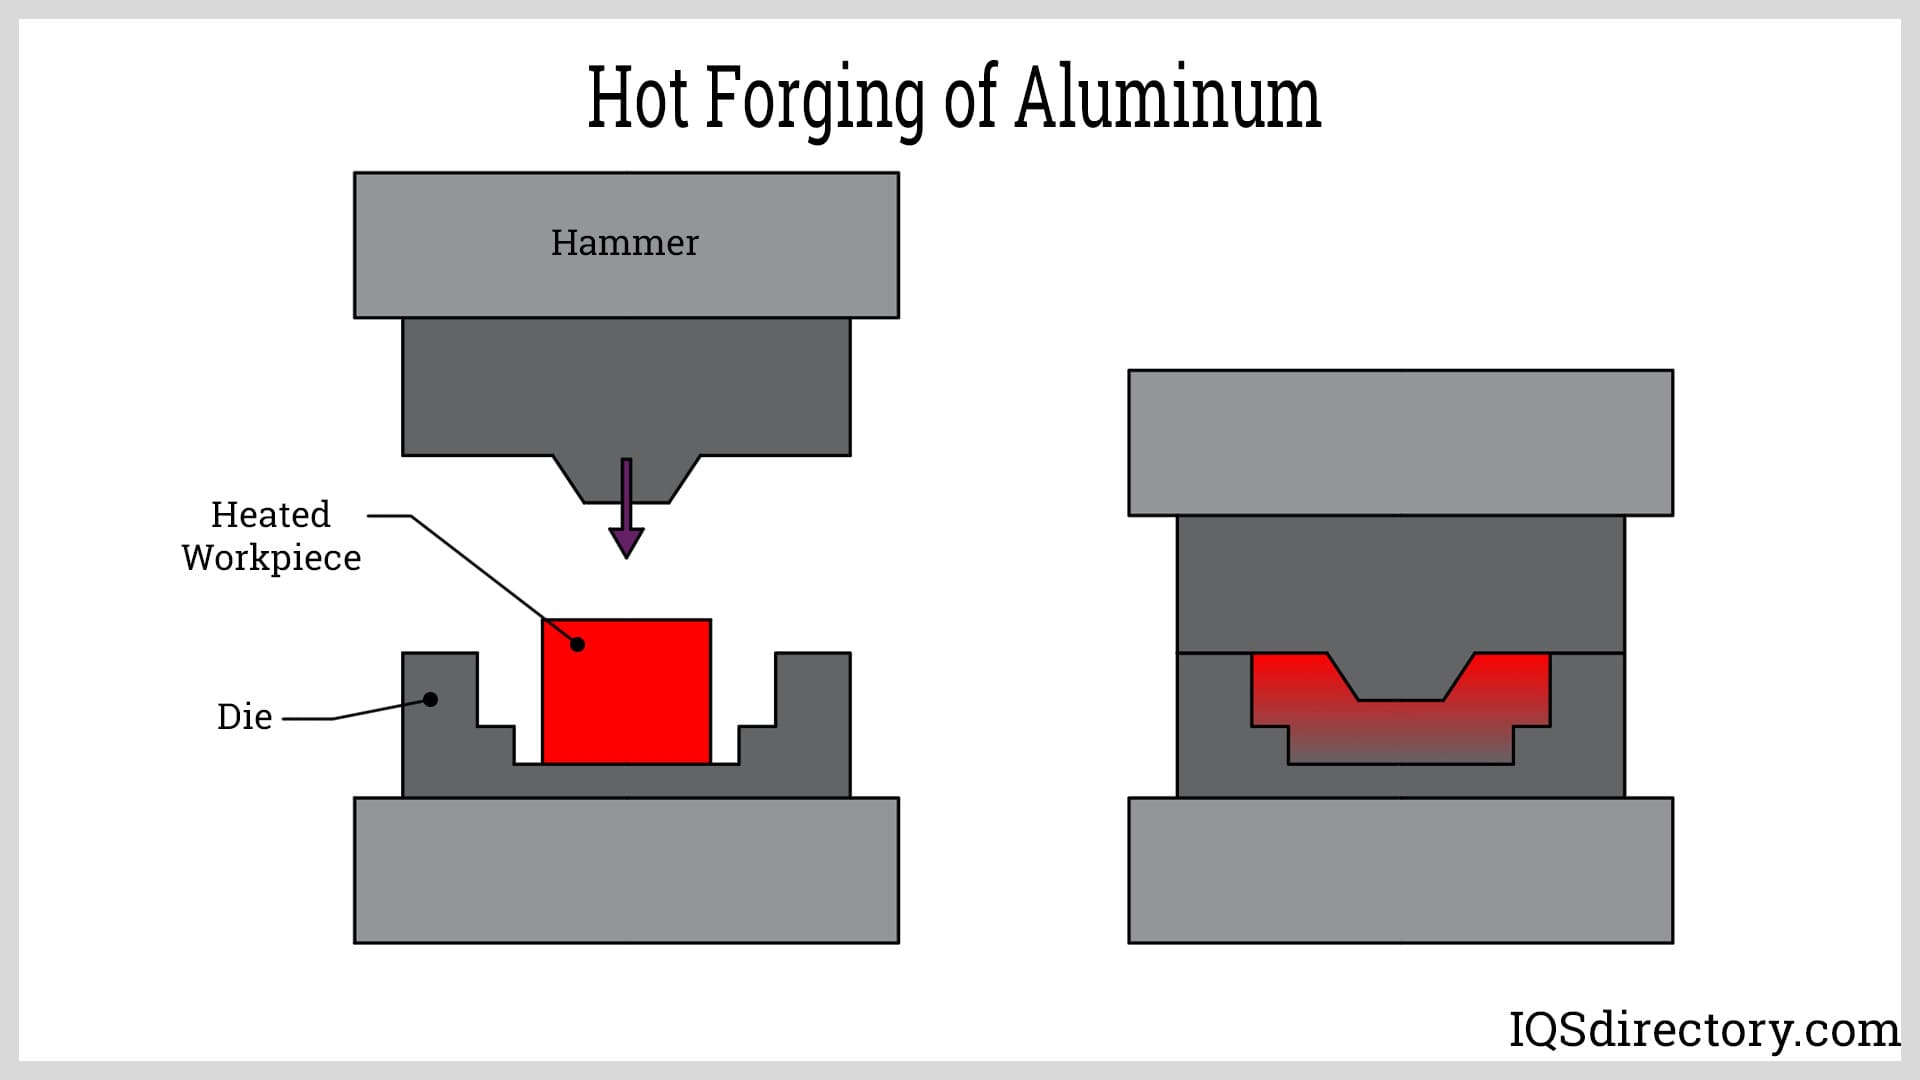 Hot Forging of Aluminum